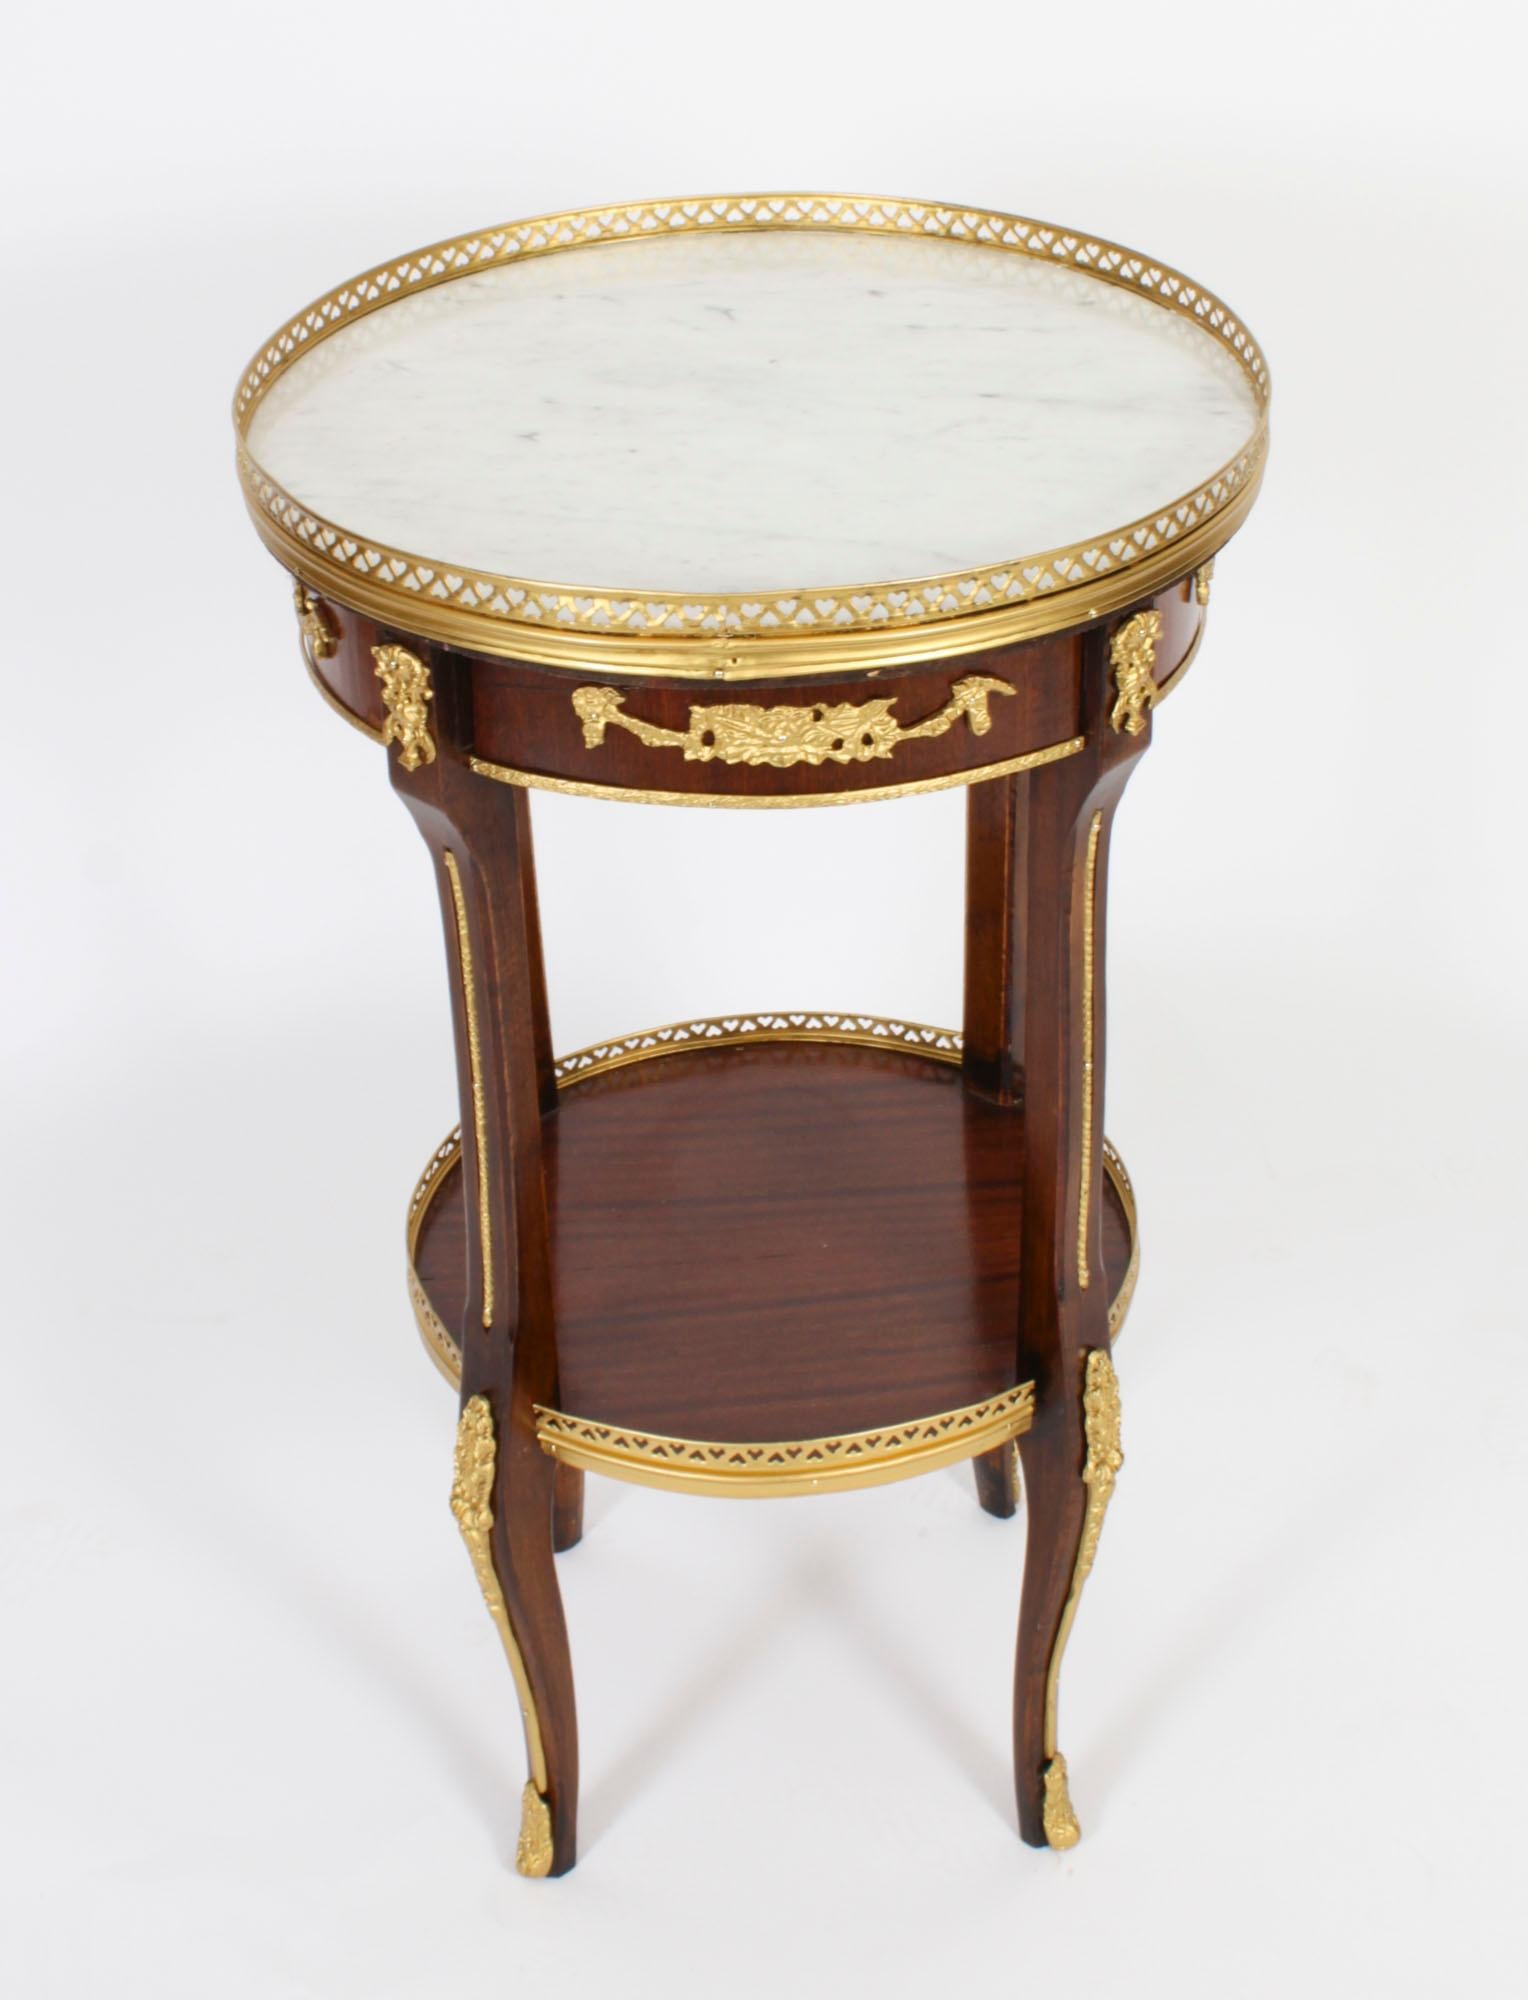 Il s'agit d'une magnifique table d'appoint circulaire de style néo-empire français, ornée de décorations en bronze doré et d'un magnifique plateau en marbre blanc 